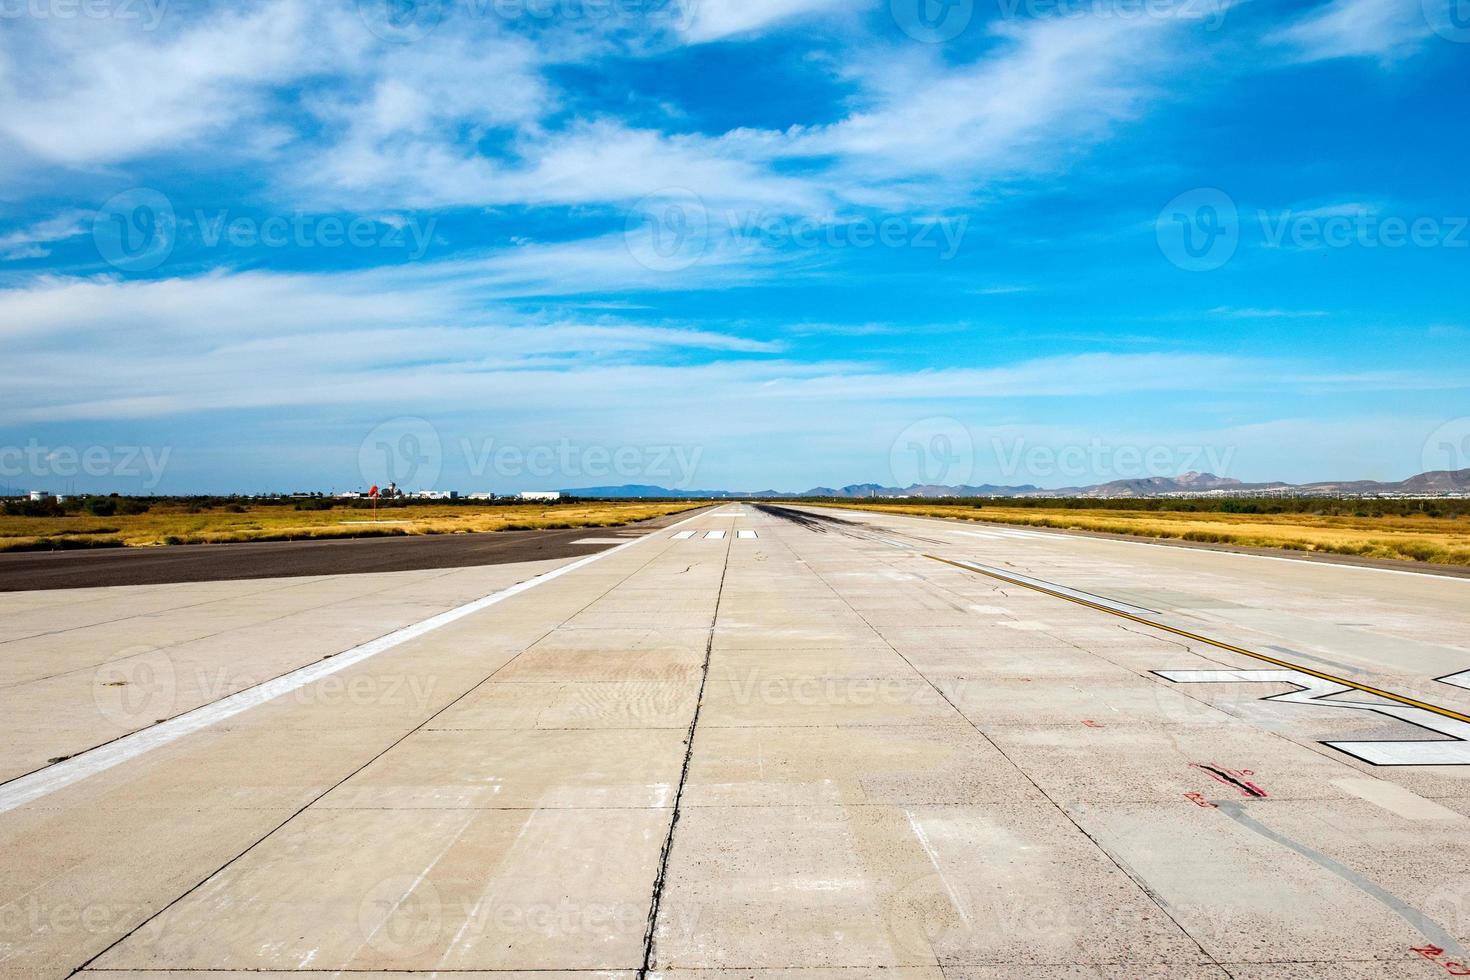 mexikansk små flygplats landning zon innan ta av foto